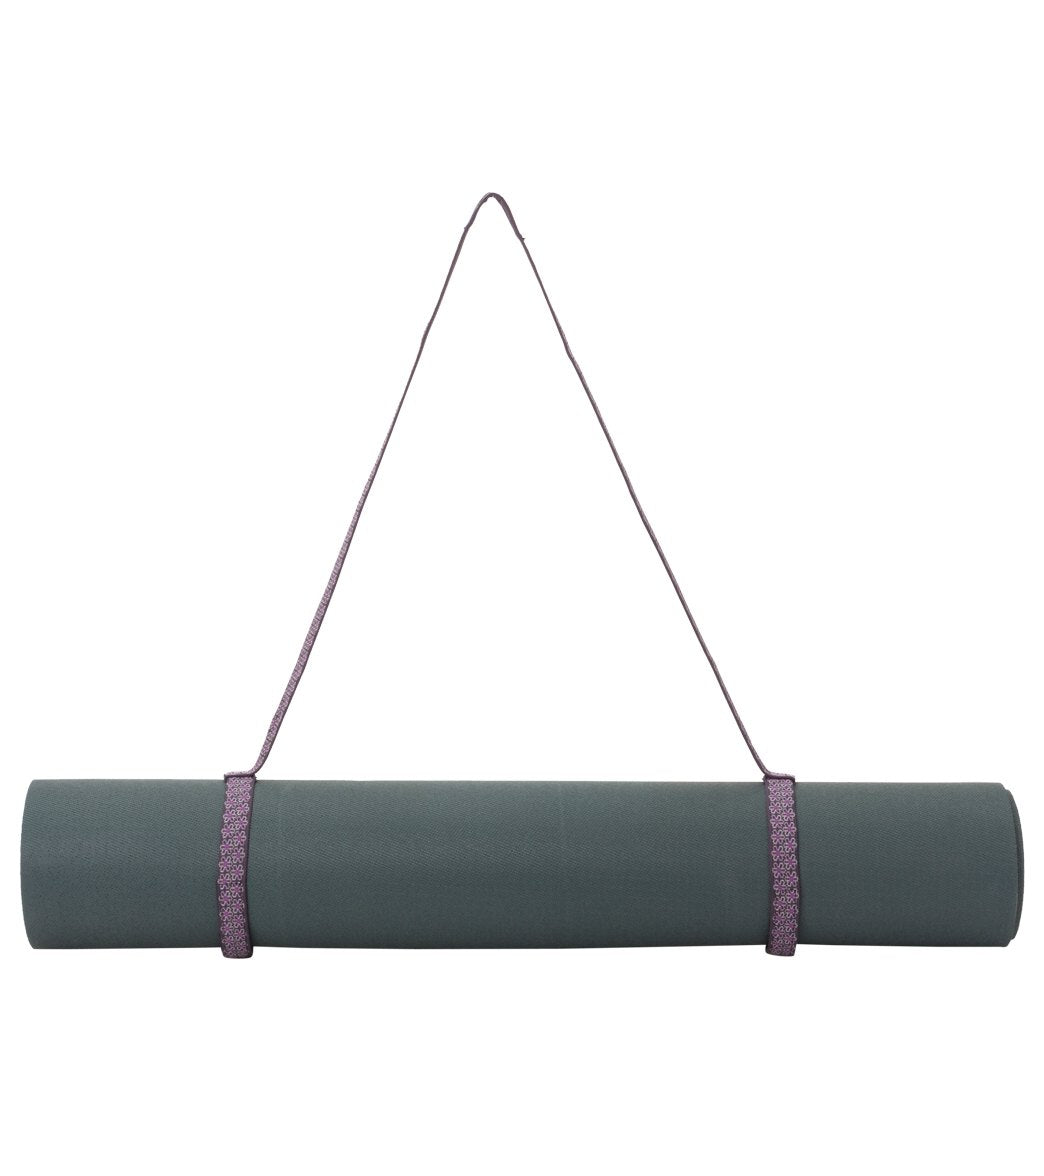 mat sling